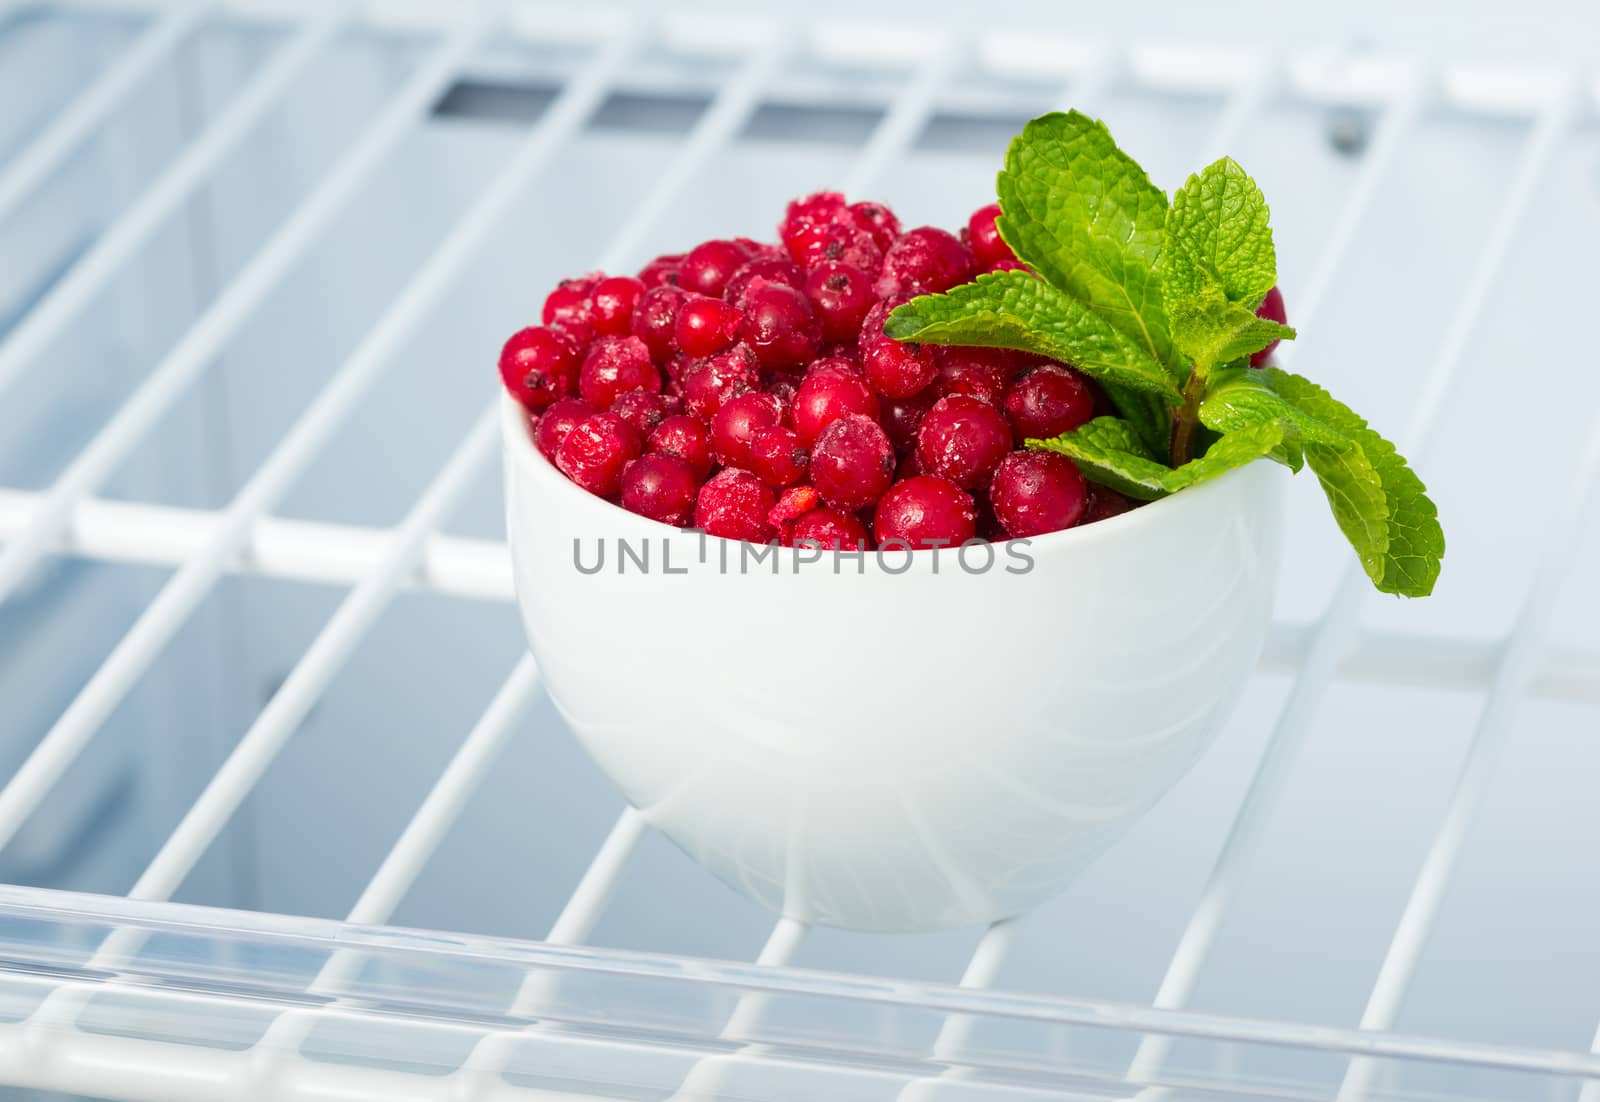 frozen red currants in the freezer by iprachenko